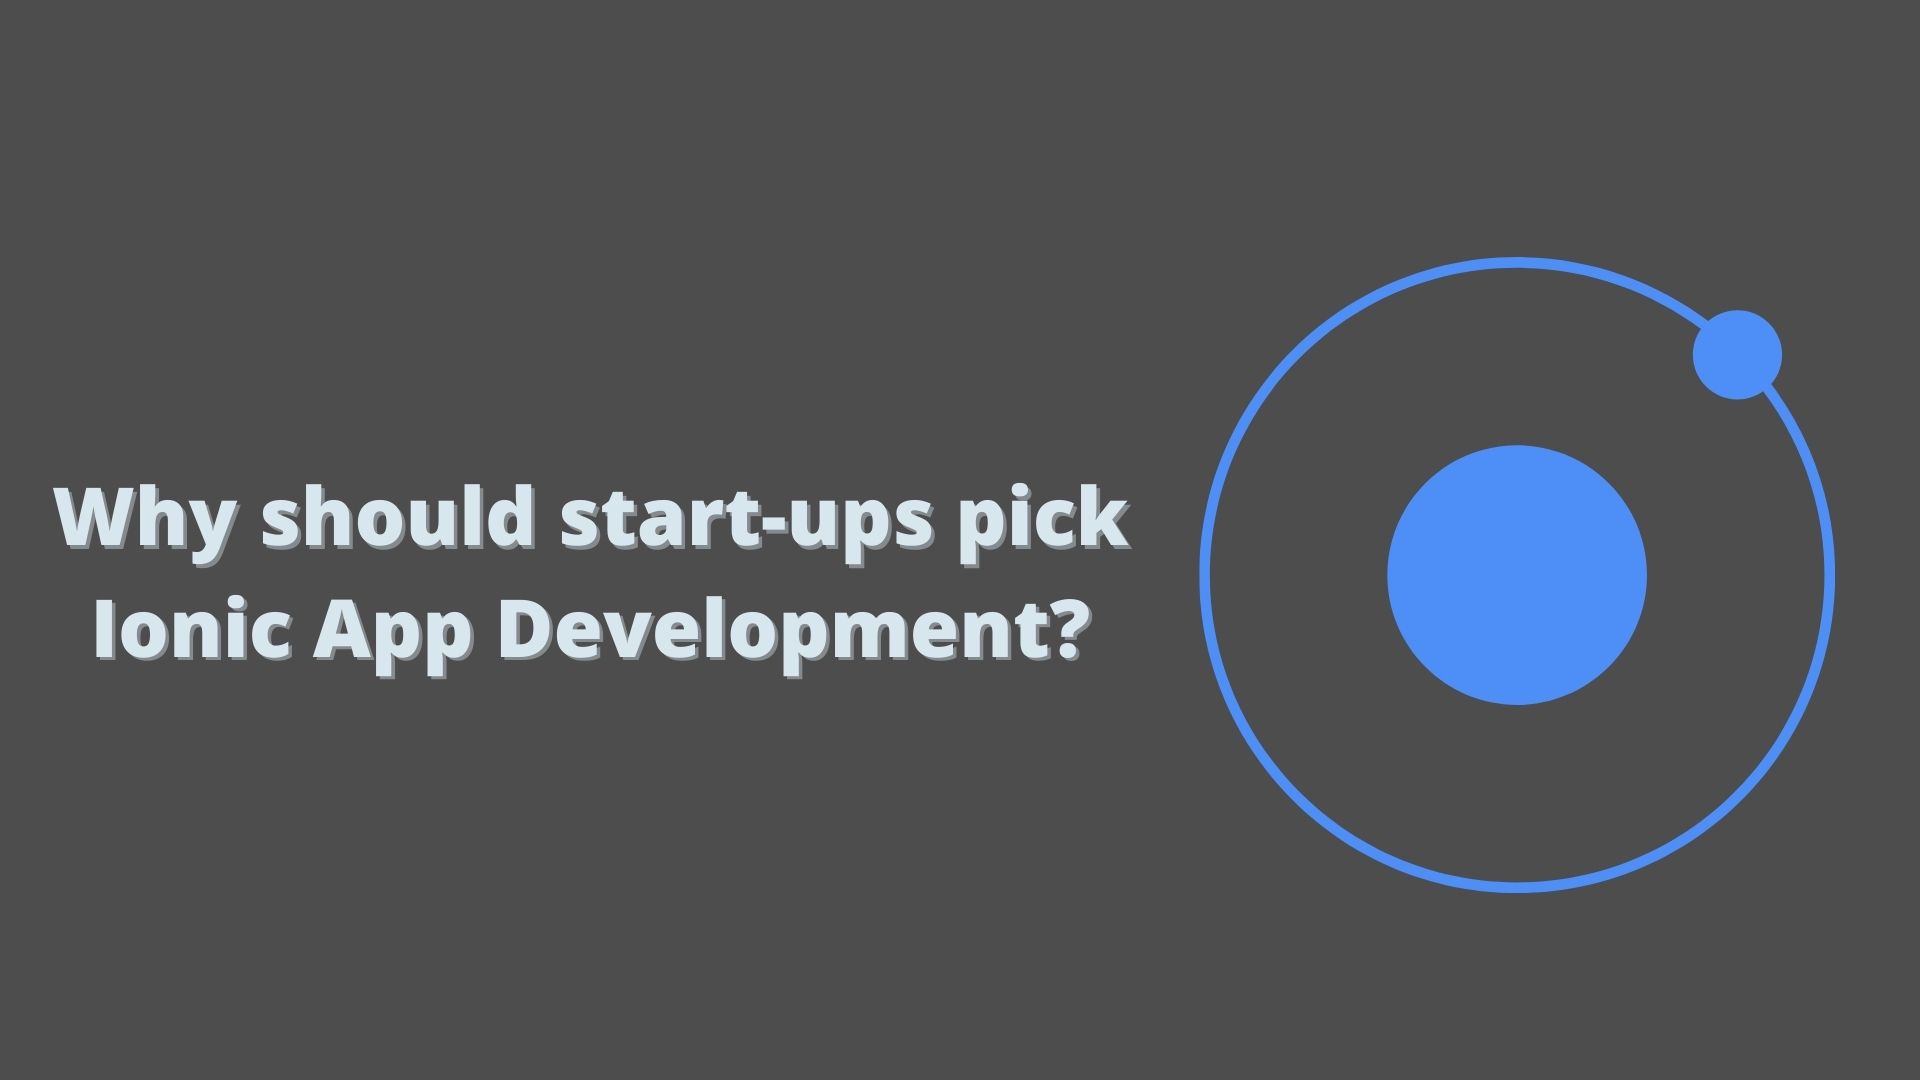 Why should start-ups pick Ionic App Development?